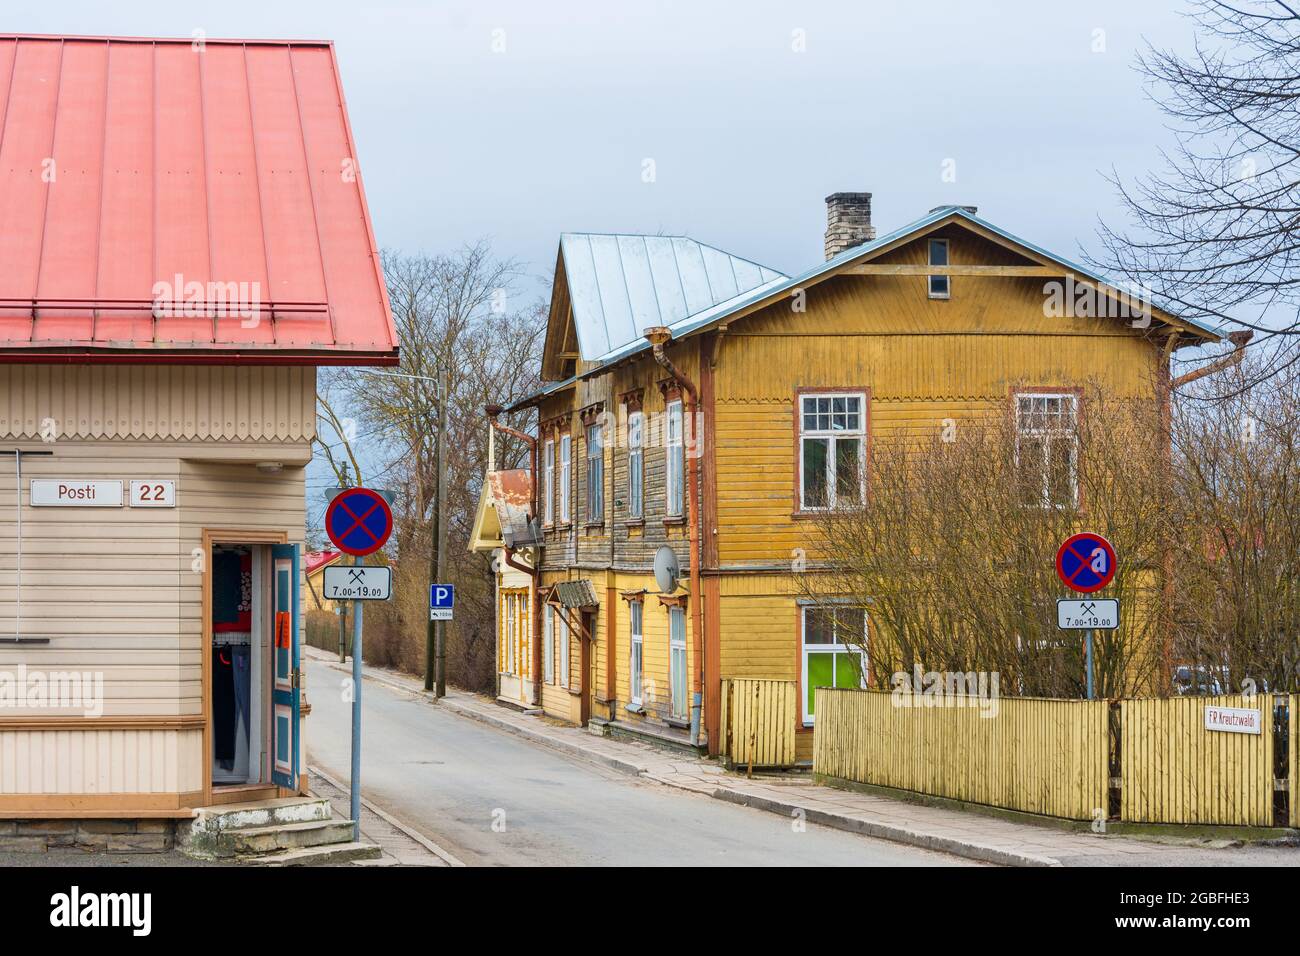 Corner door on a light beige wooden house on Posti street in Haapsalu Estonia Stock Photo